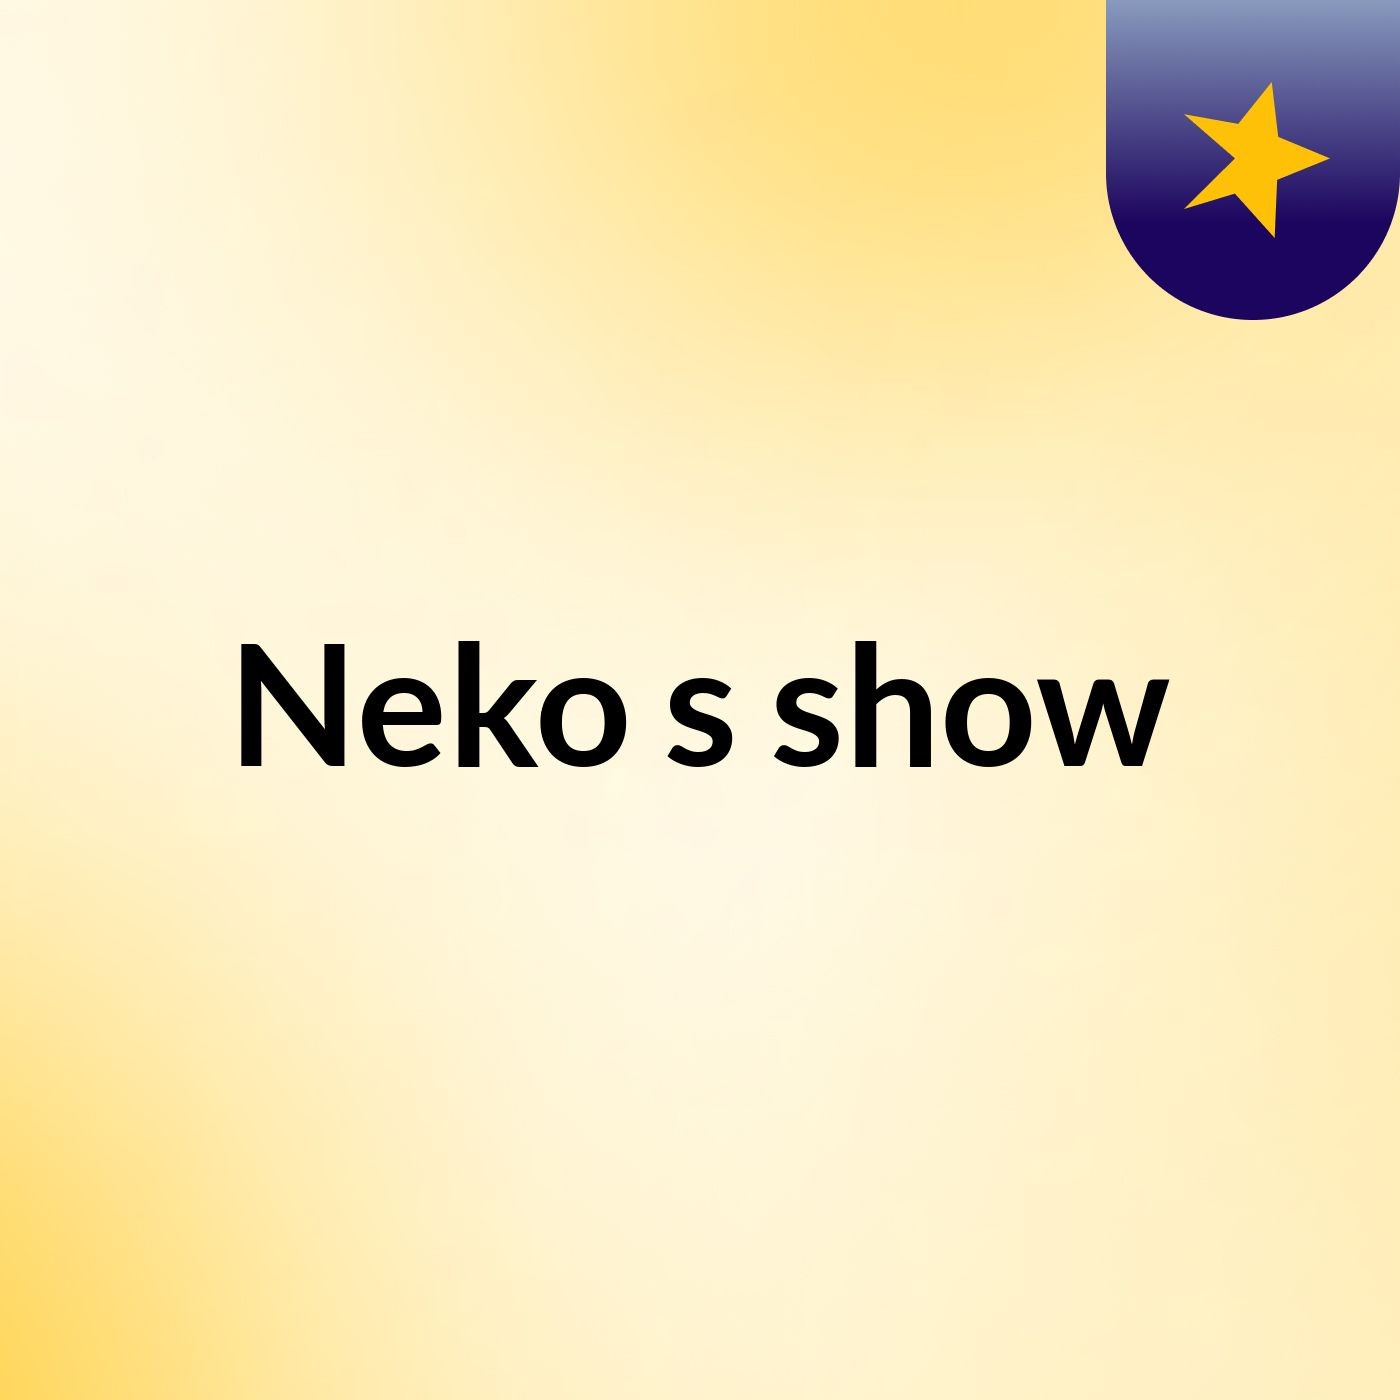 Neko's show